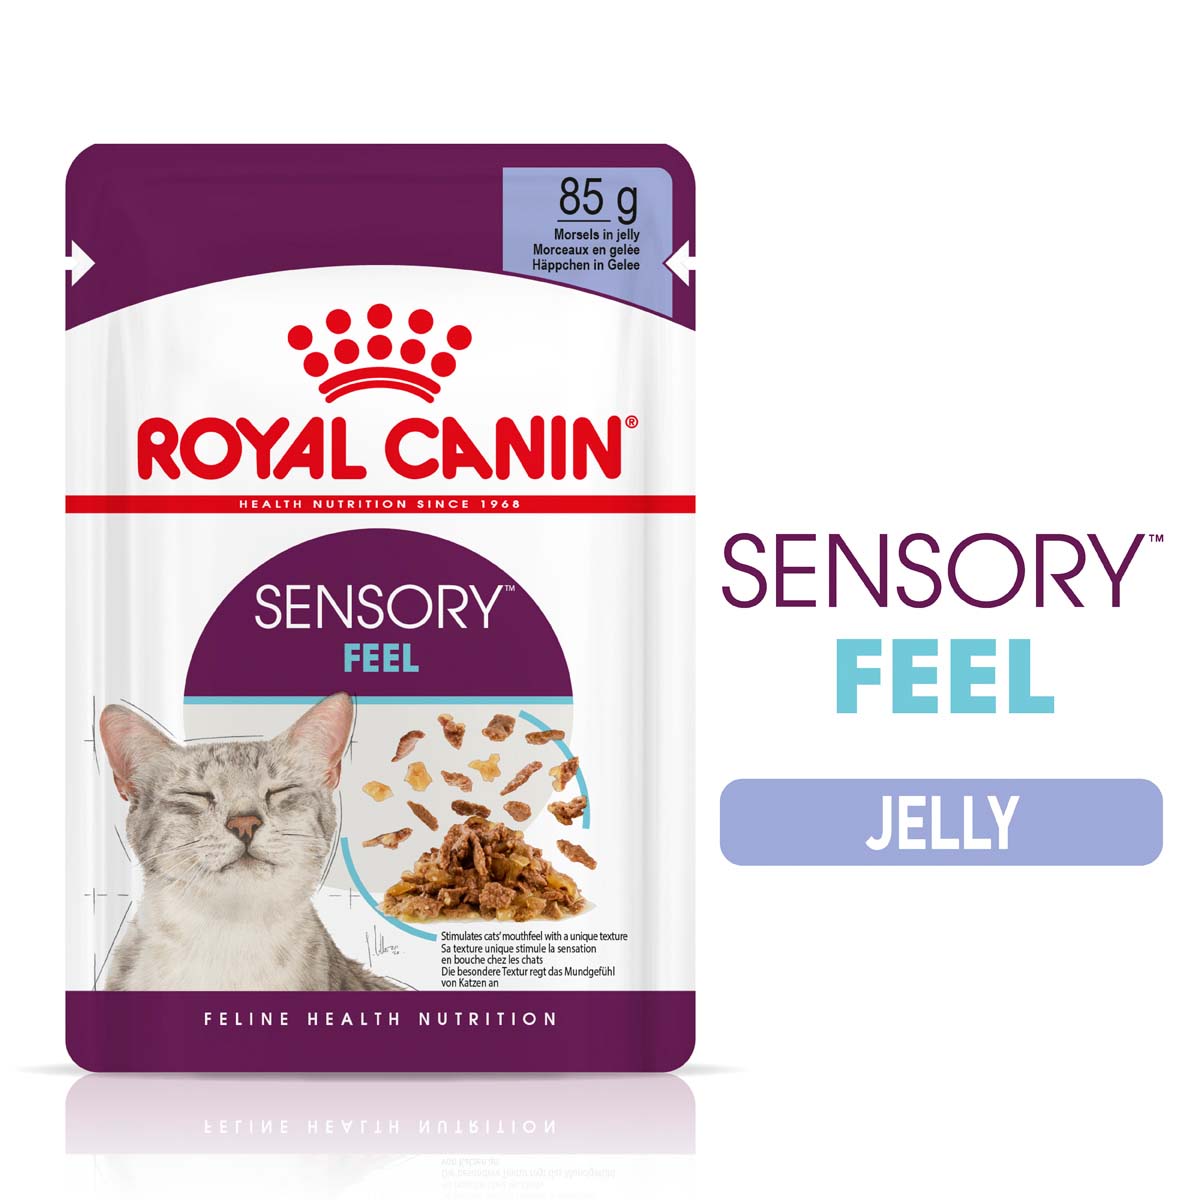 Royal Canin Sensory Feel Jelly 48x85g